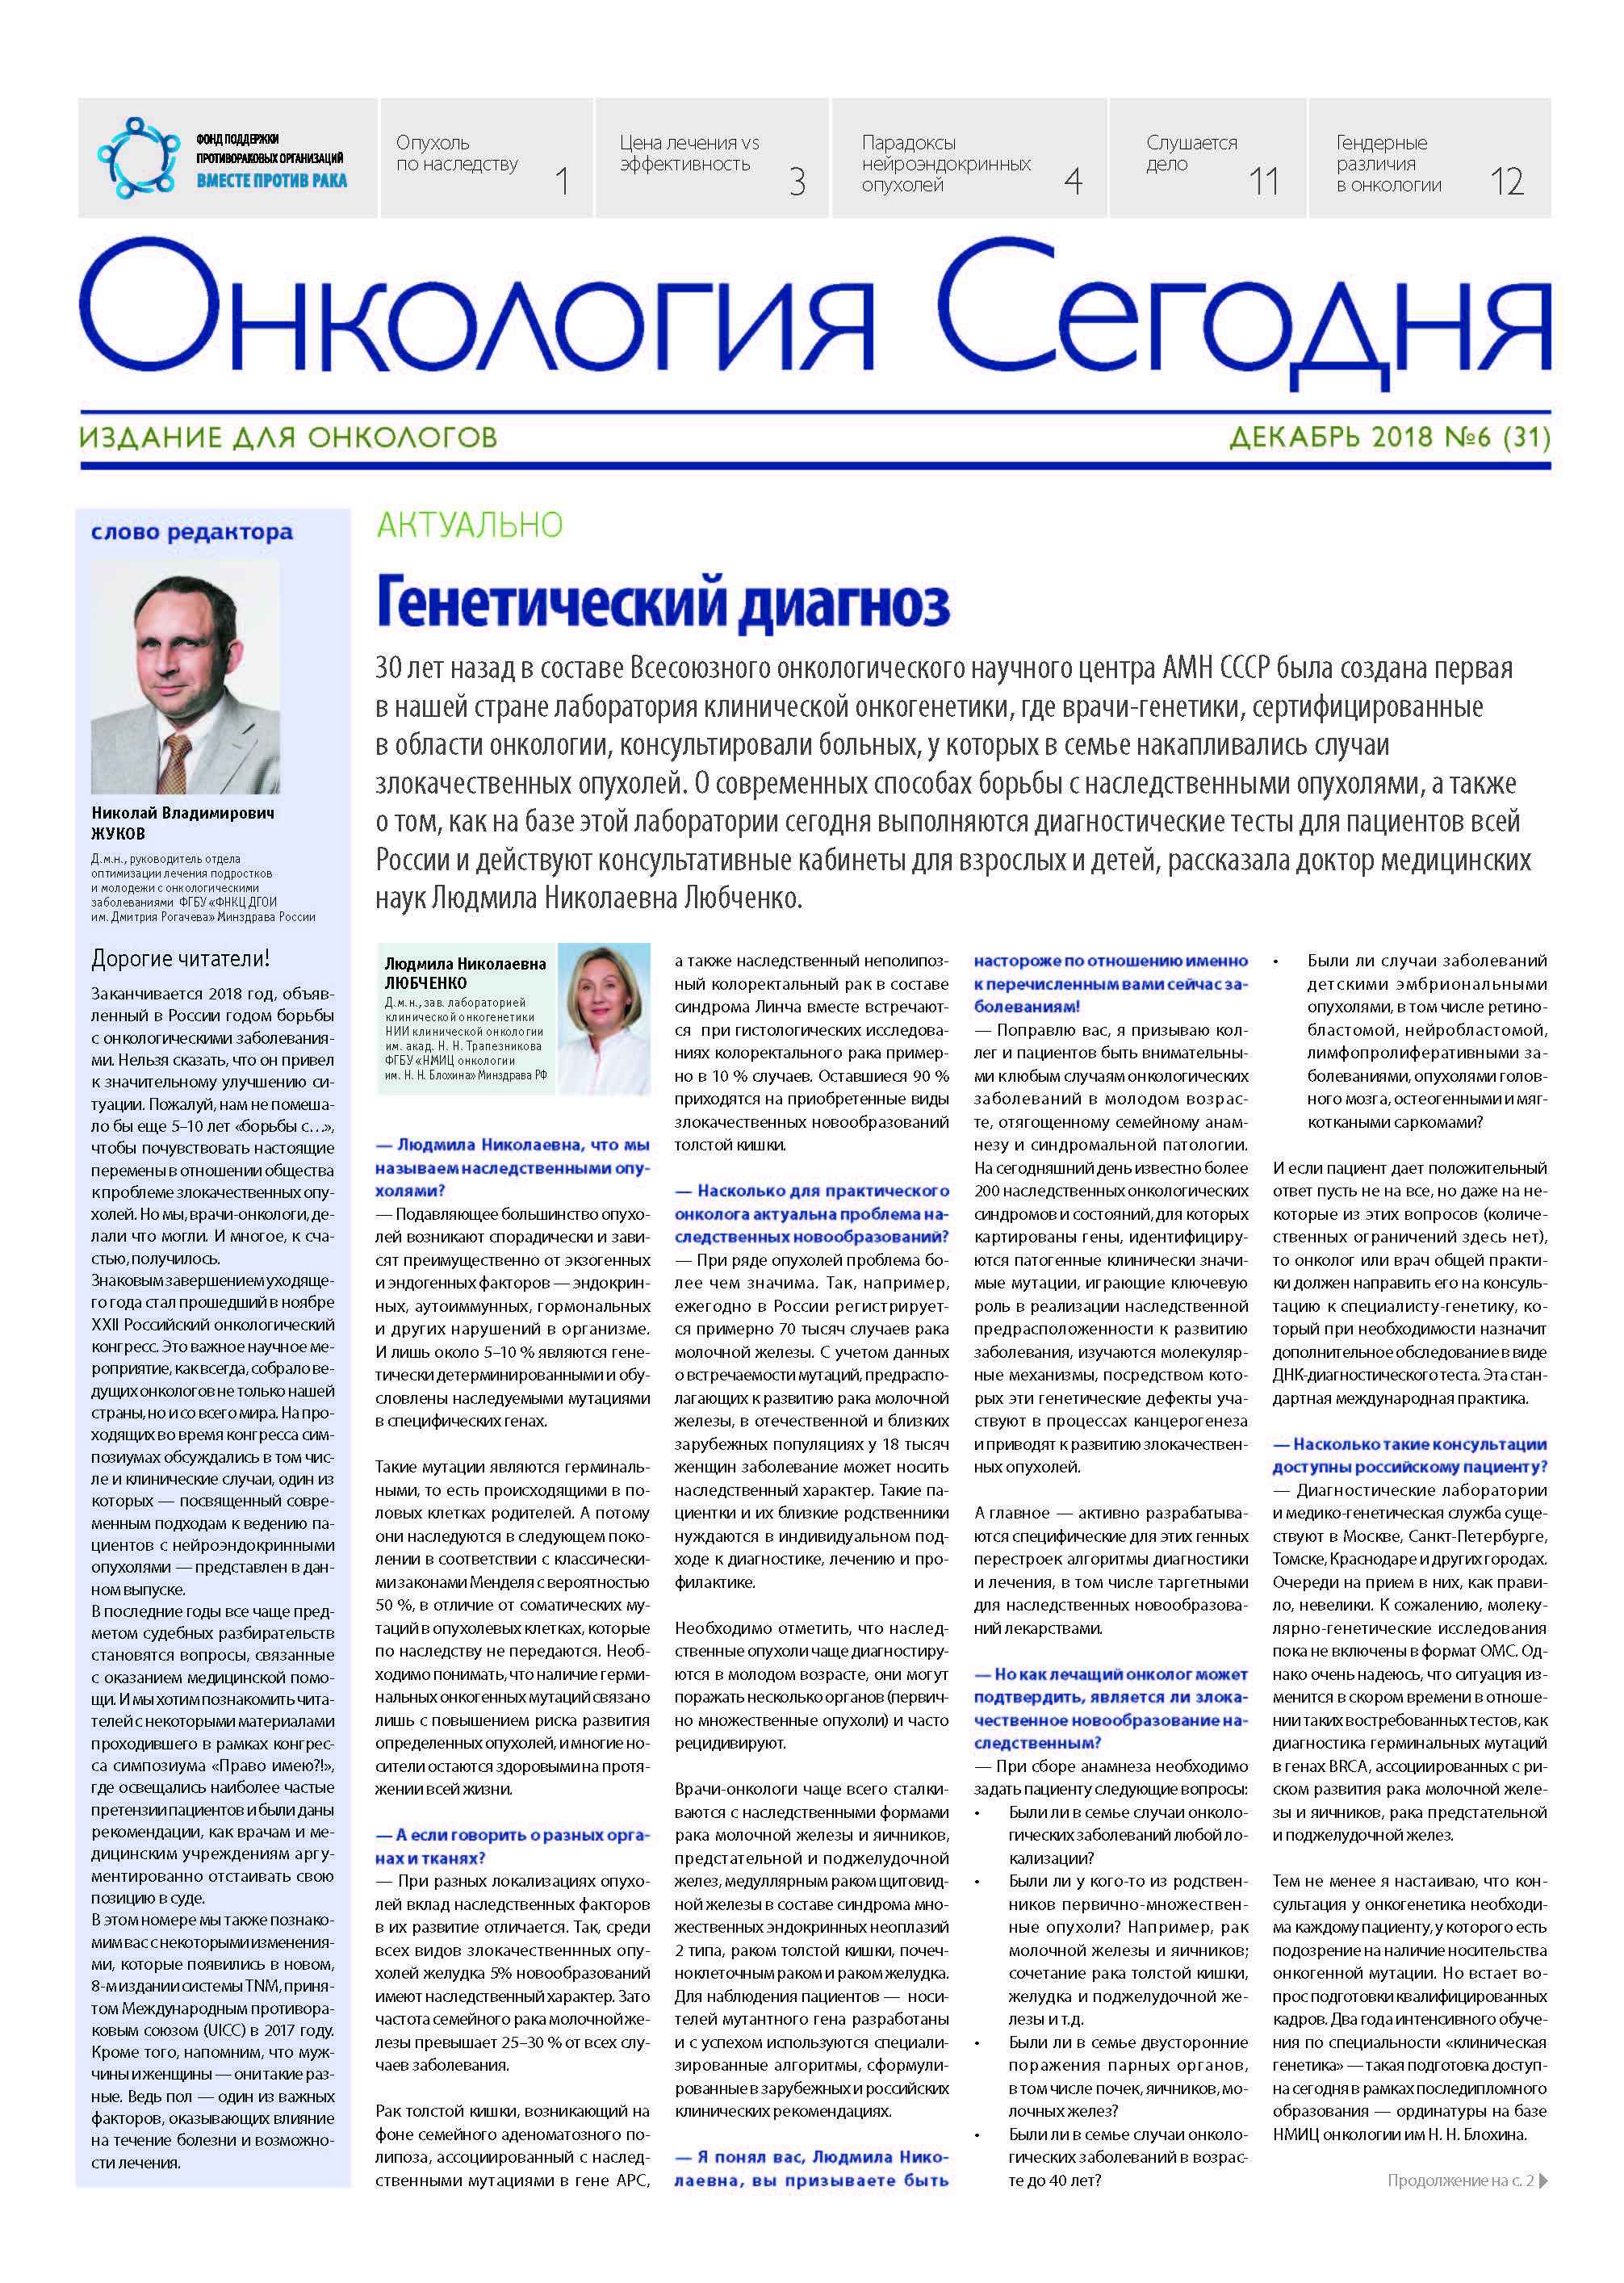 ИД АБВ-пресс выпустил шестой номер газеты «Онкология Сегодня»